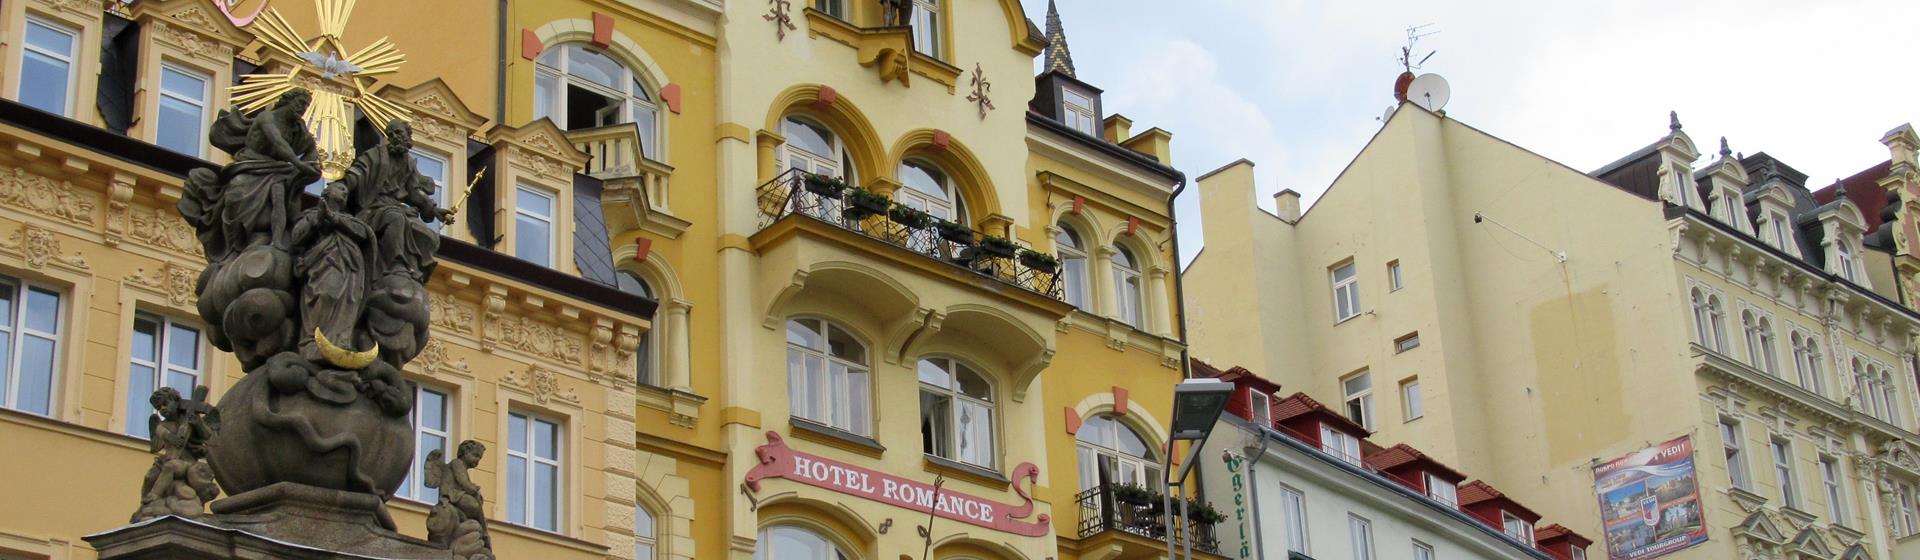 Karlovy Vary Holidays